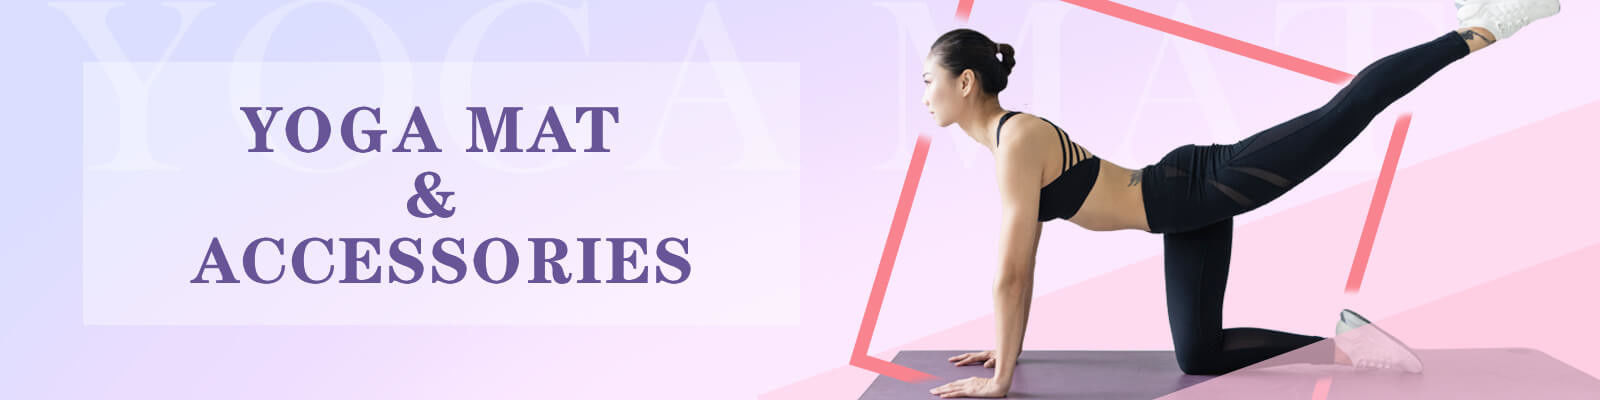 चीन सबसे अच्छा योग व्यायाम ब्लॉक बिक्री पर